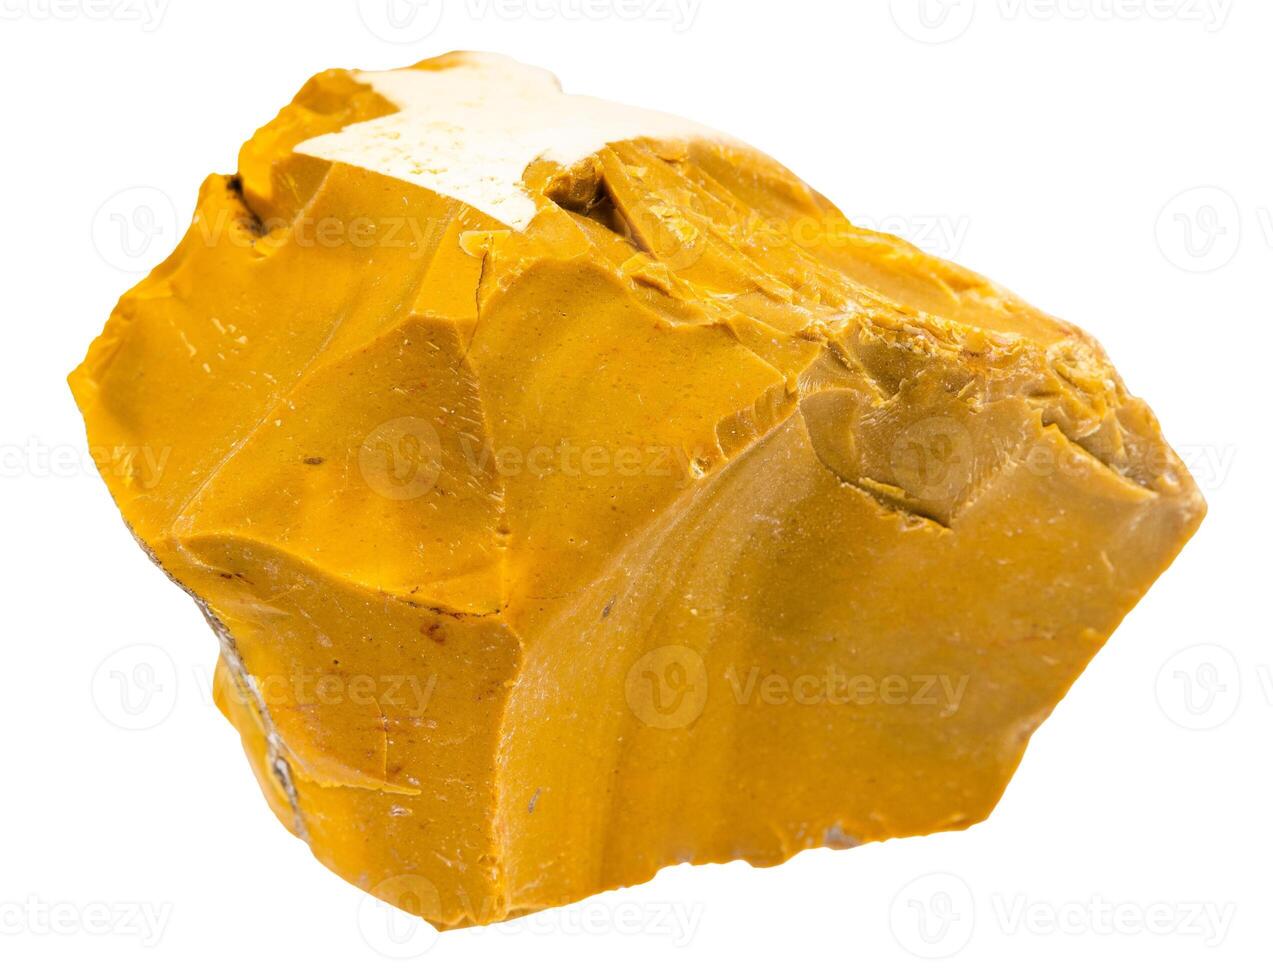 não polido amarelo mookaite mineral isolado foto